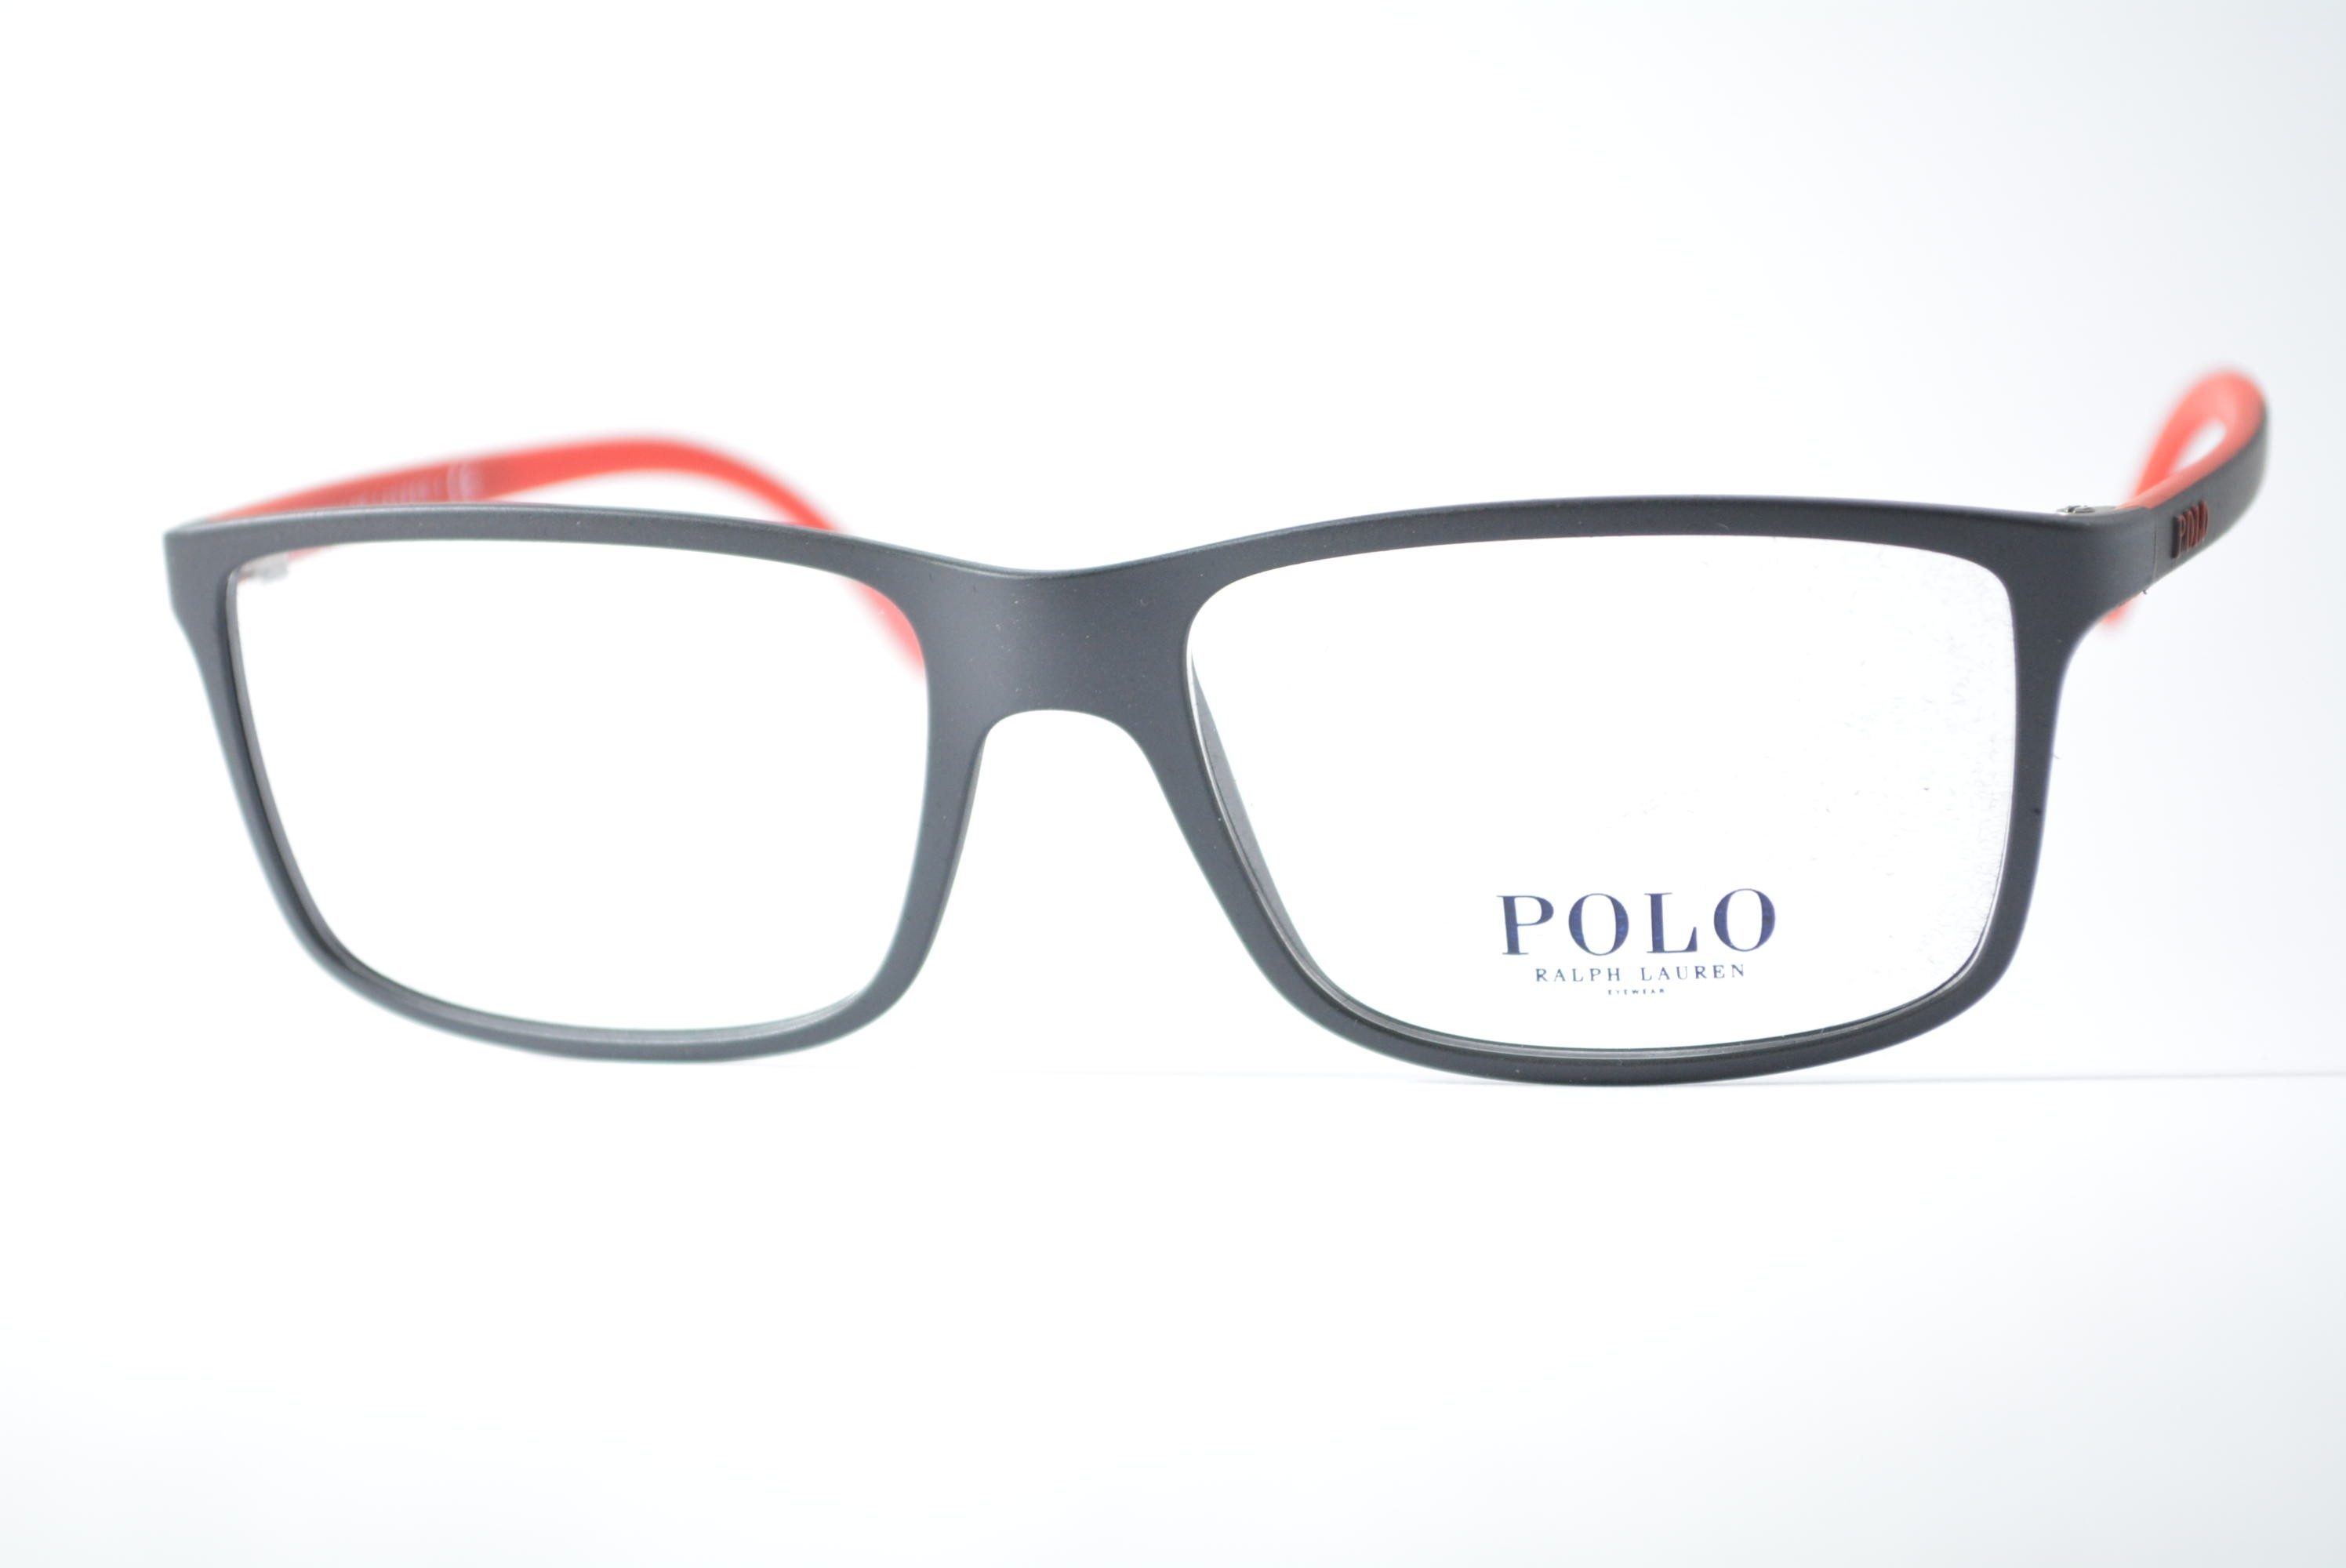 armação de óculos Polo Ralph Lauren mod ph2126 5504 58